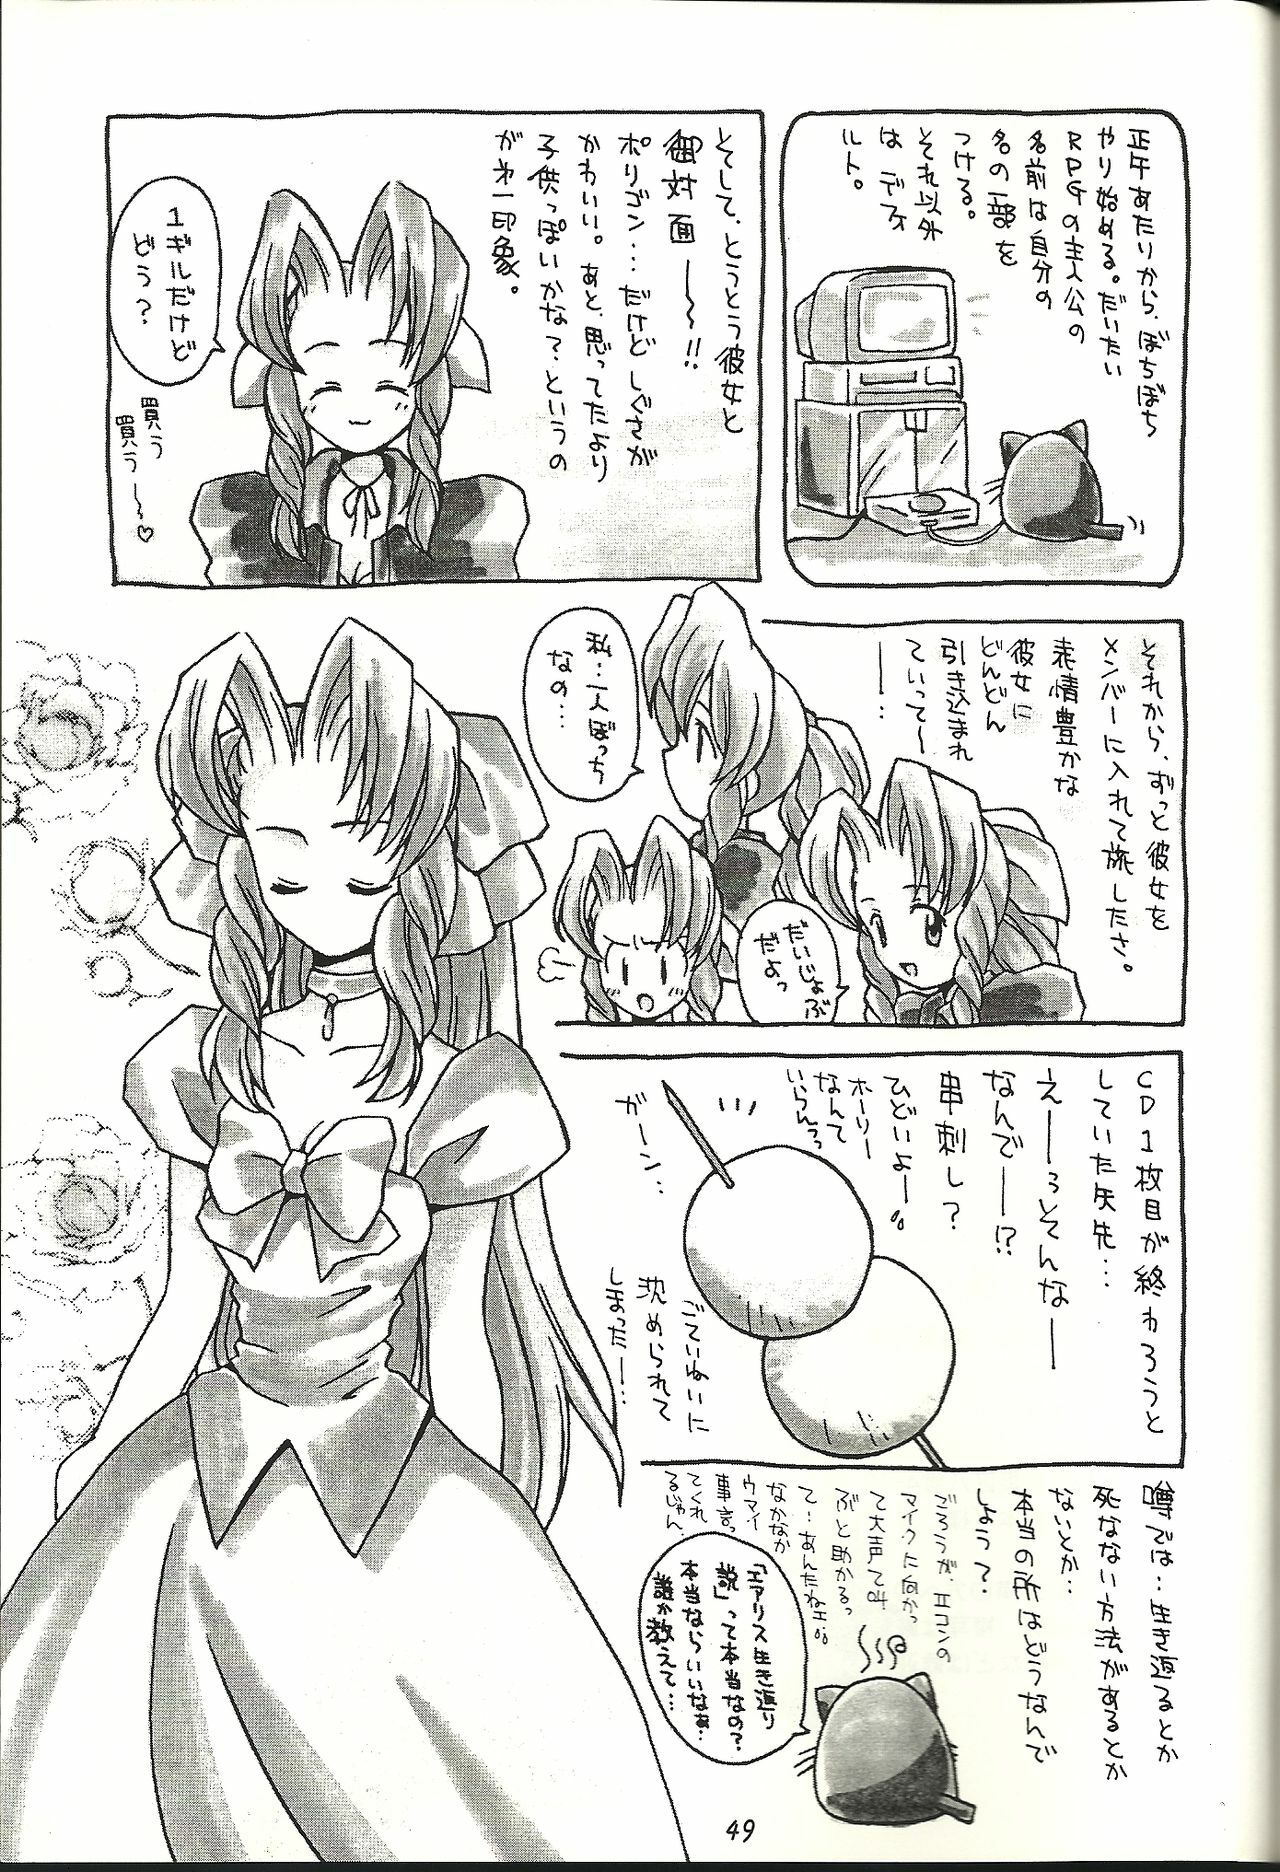 (CR21) [Bakuhatsu BRS. (B.Tarou)] Renai Shiyou (Final Fantasy VII) page 49 full